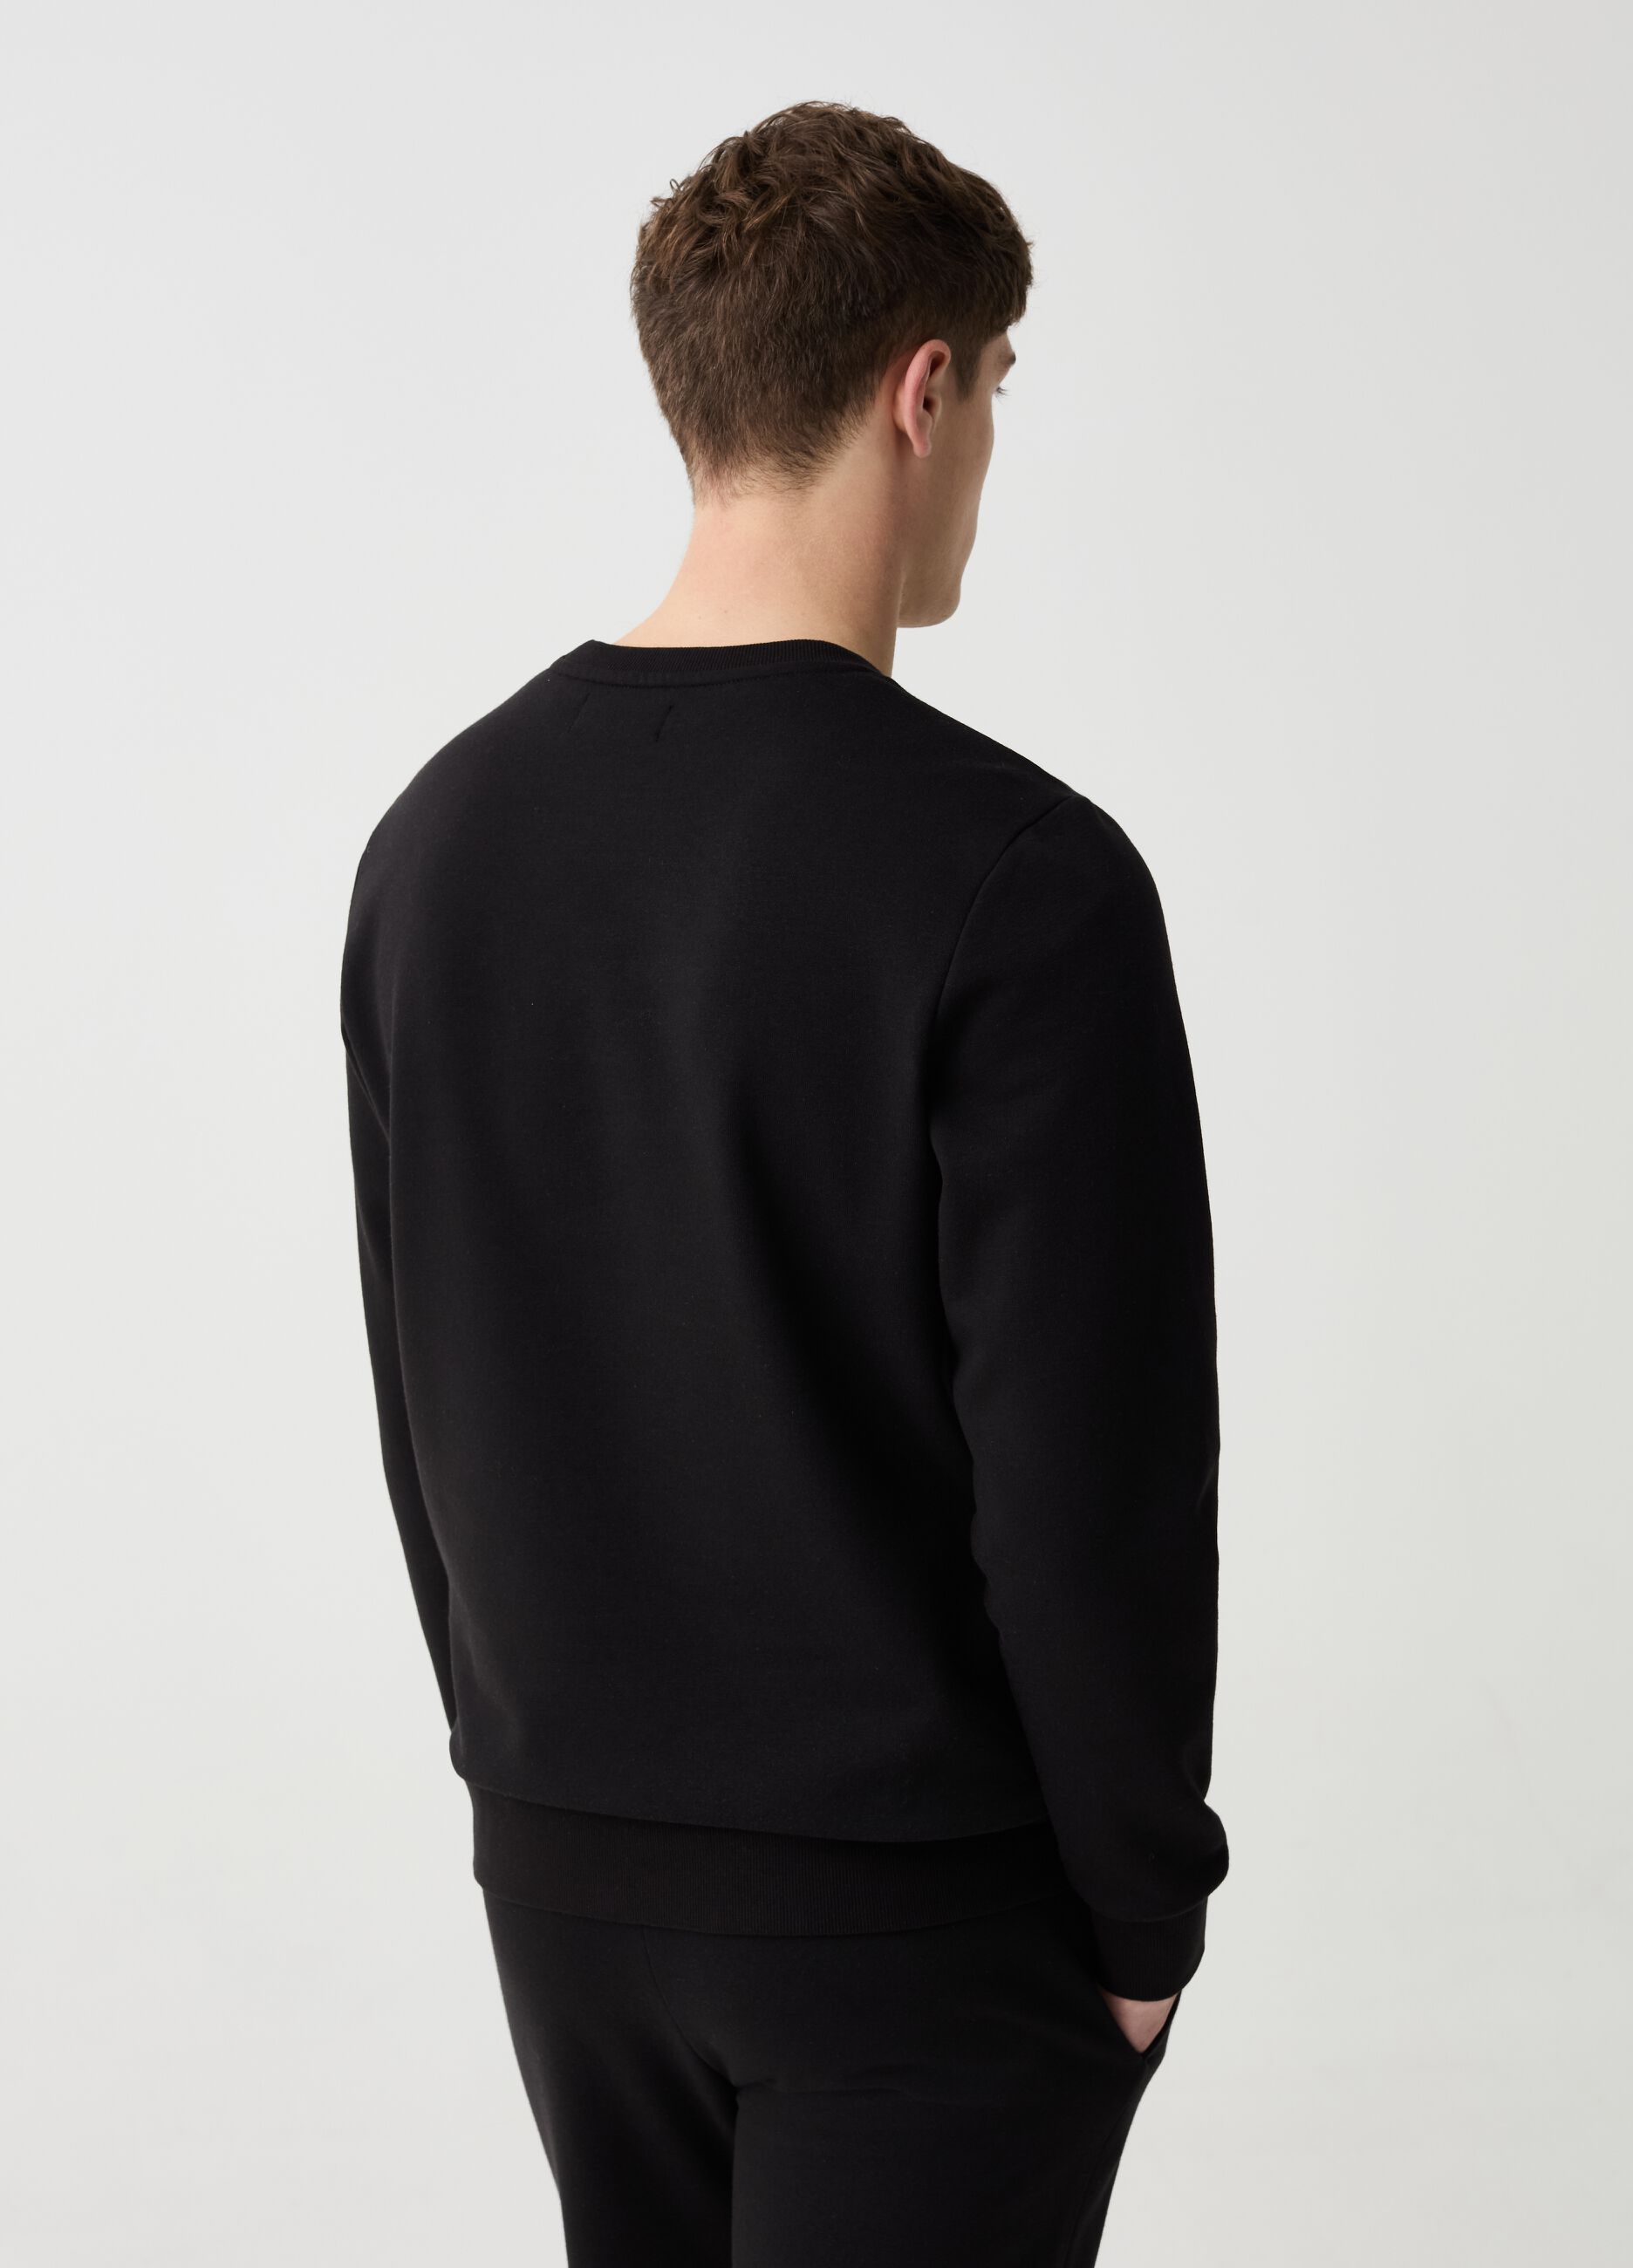 Sweatshirt with round neck